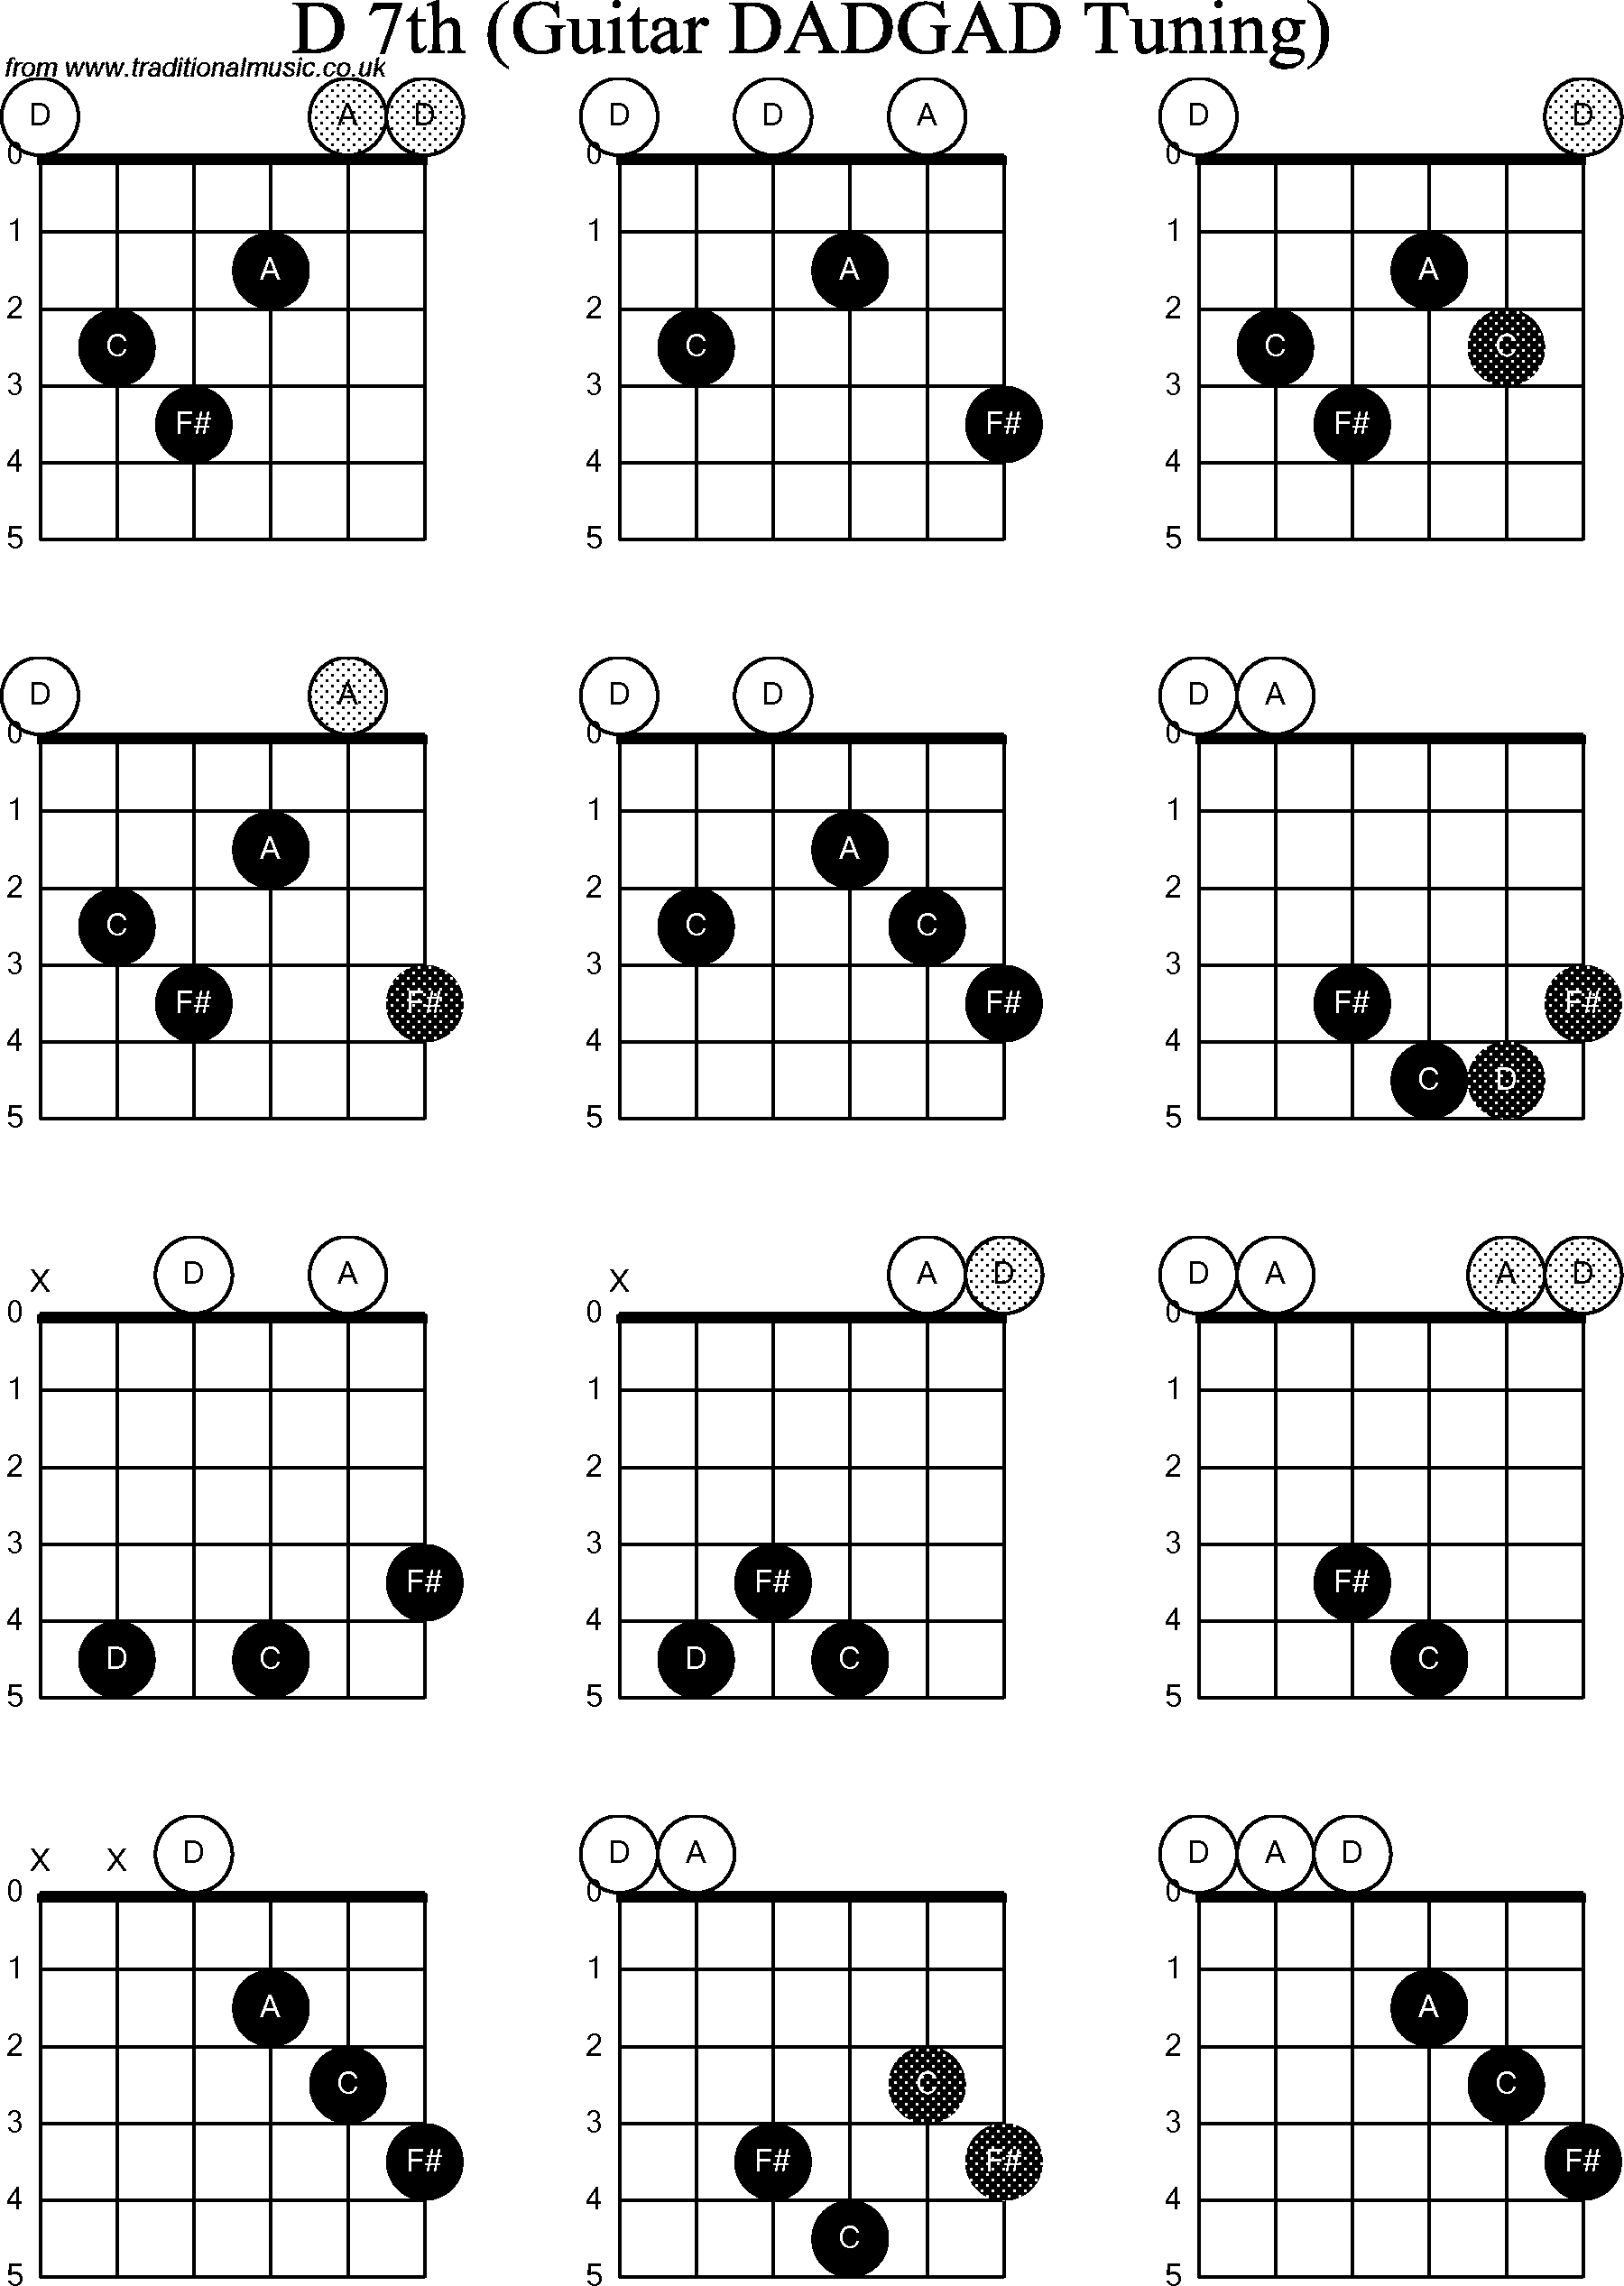 Chord Diagrams for D Modal Guitar(DADGAD), D7th